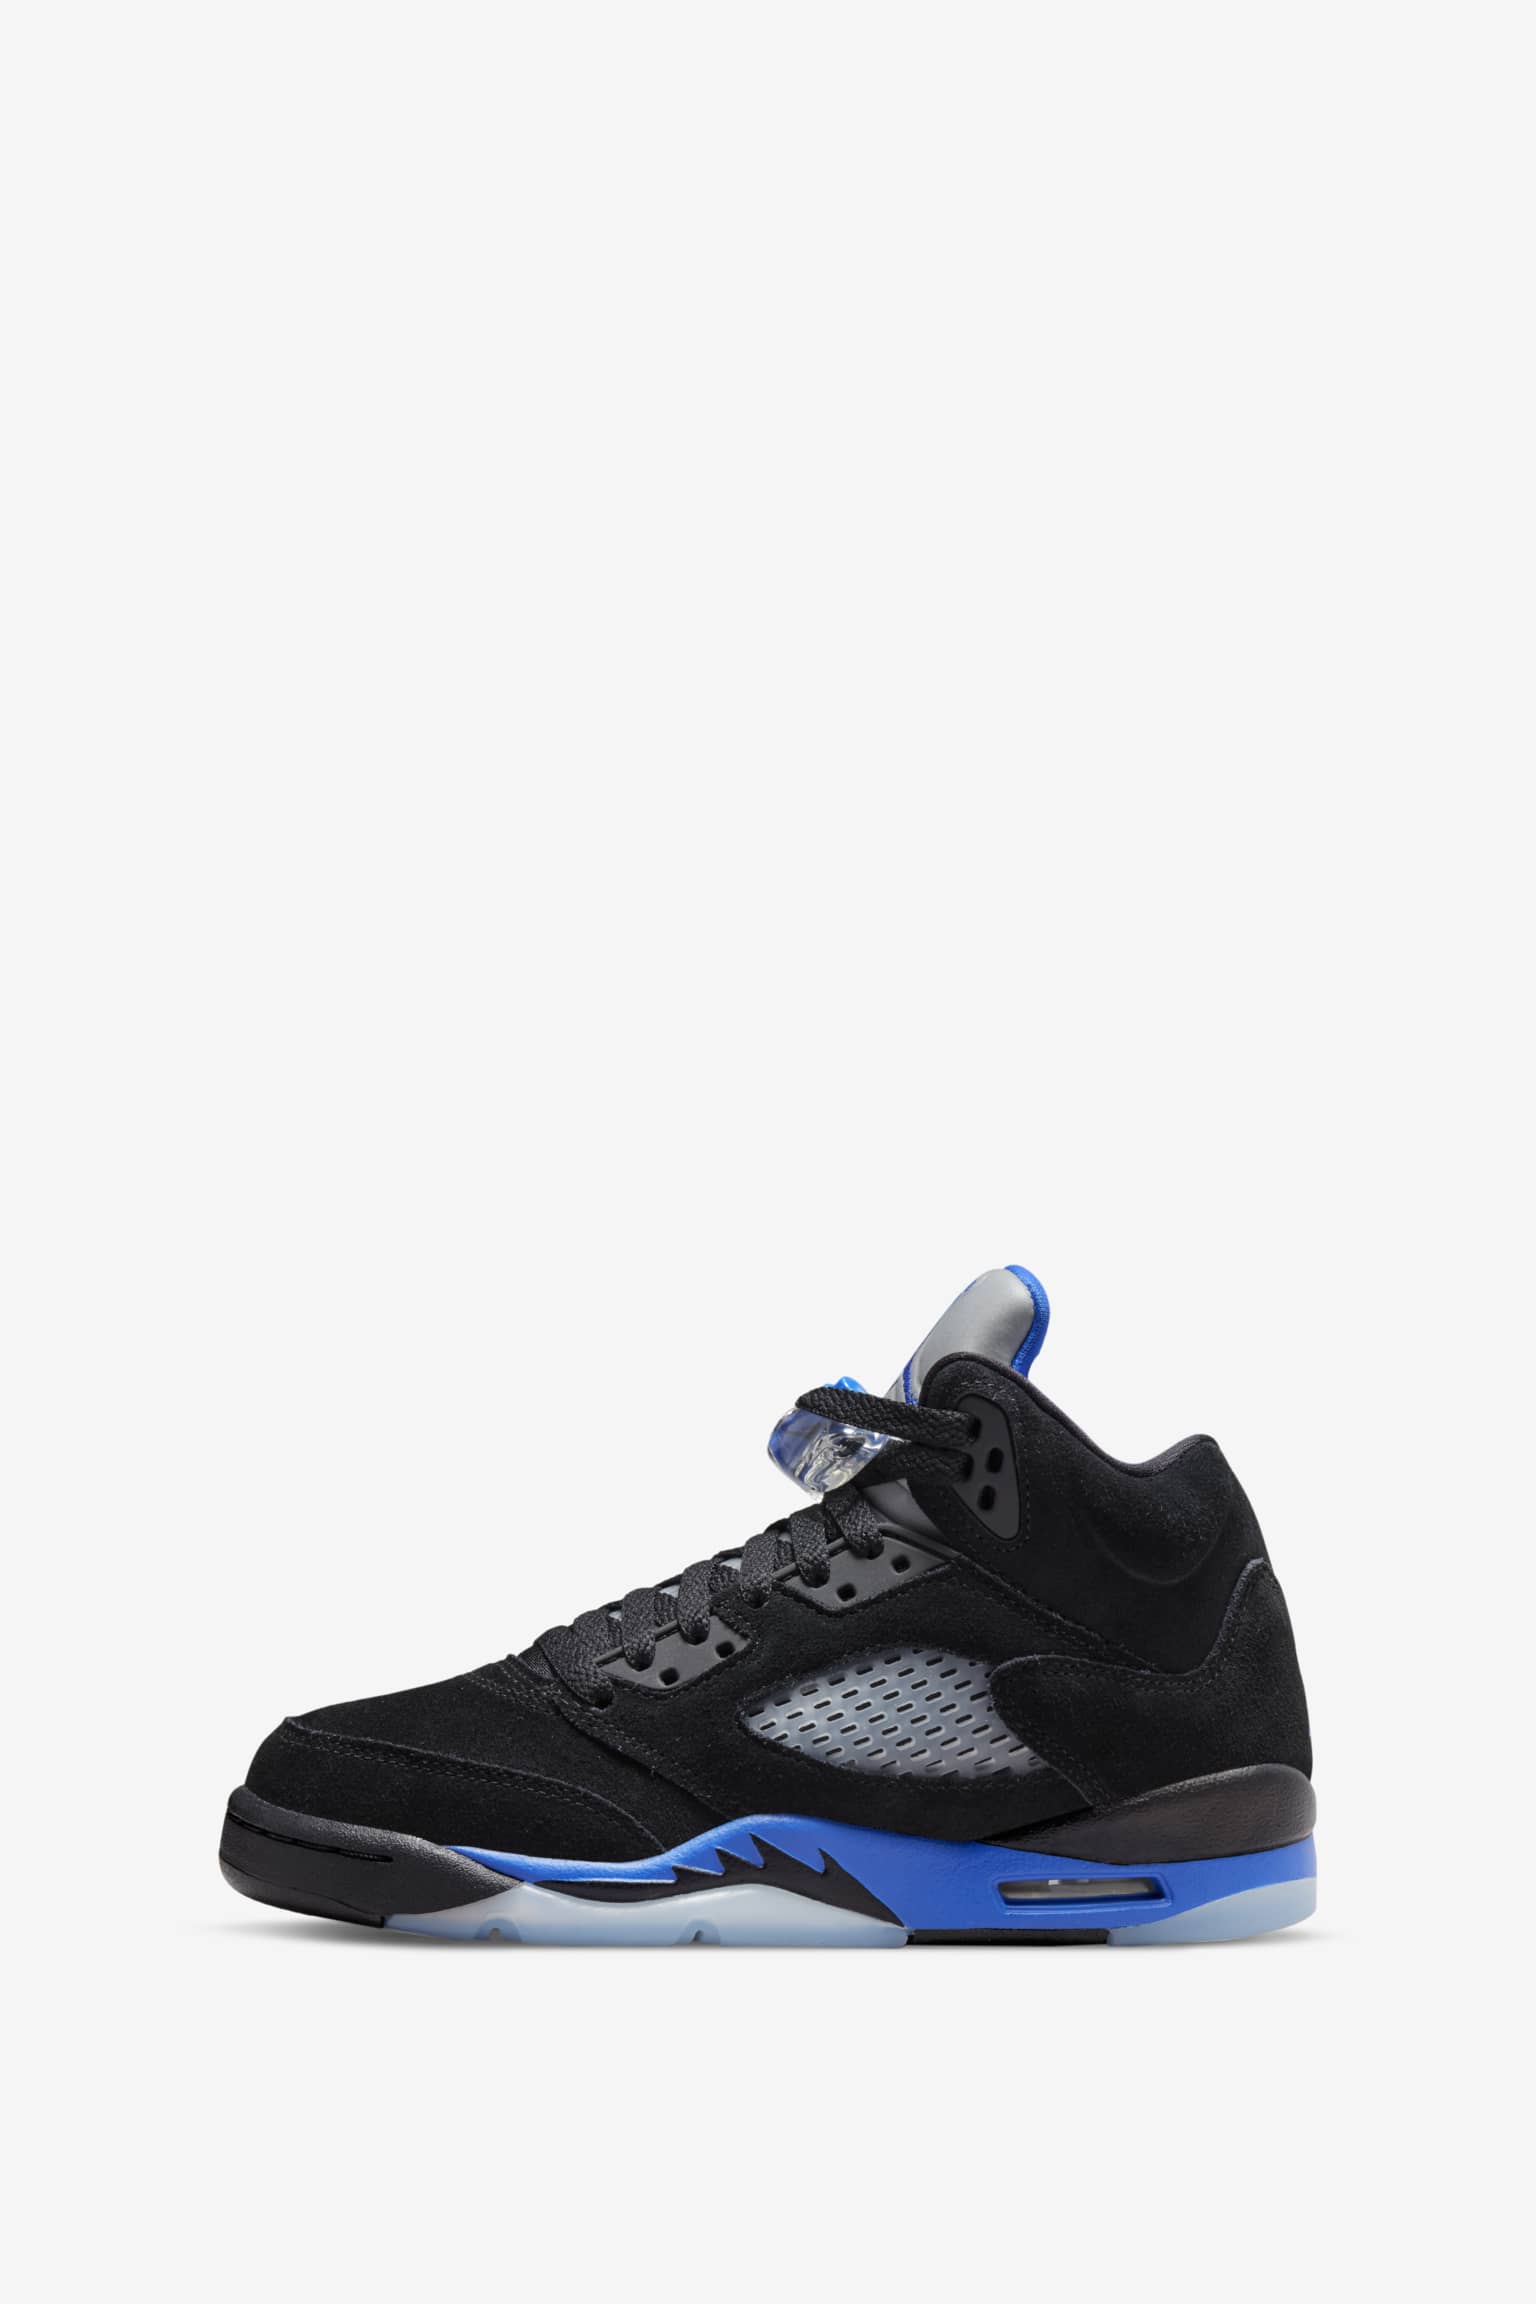 افضل مشد للبطن من نعومي Air Jordan 5 'Racer Blue' (CT4838-004) Release Date. Nike SNKRS افضل مشد للبطن من نعومي